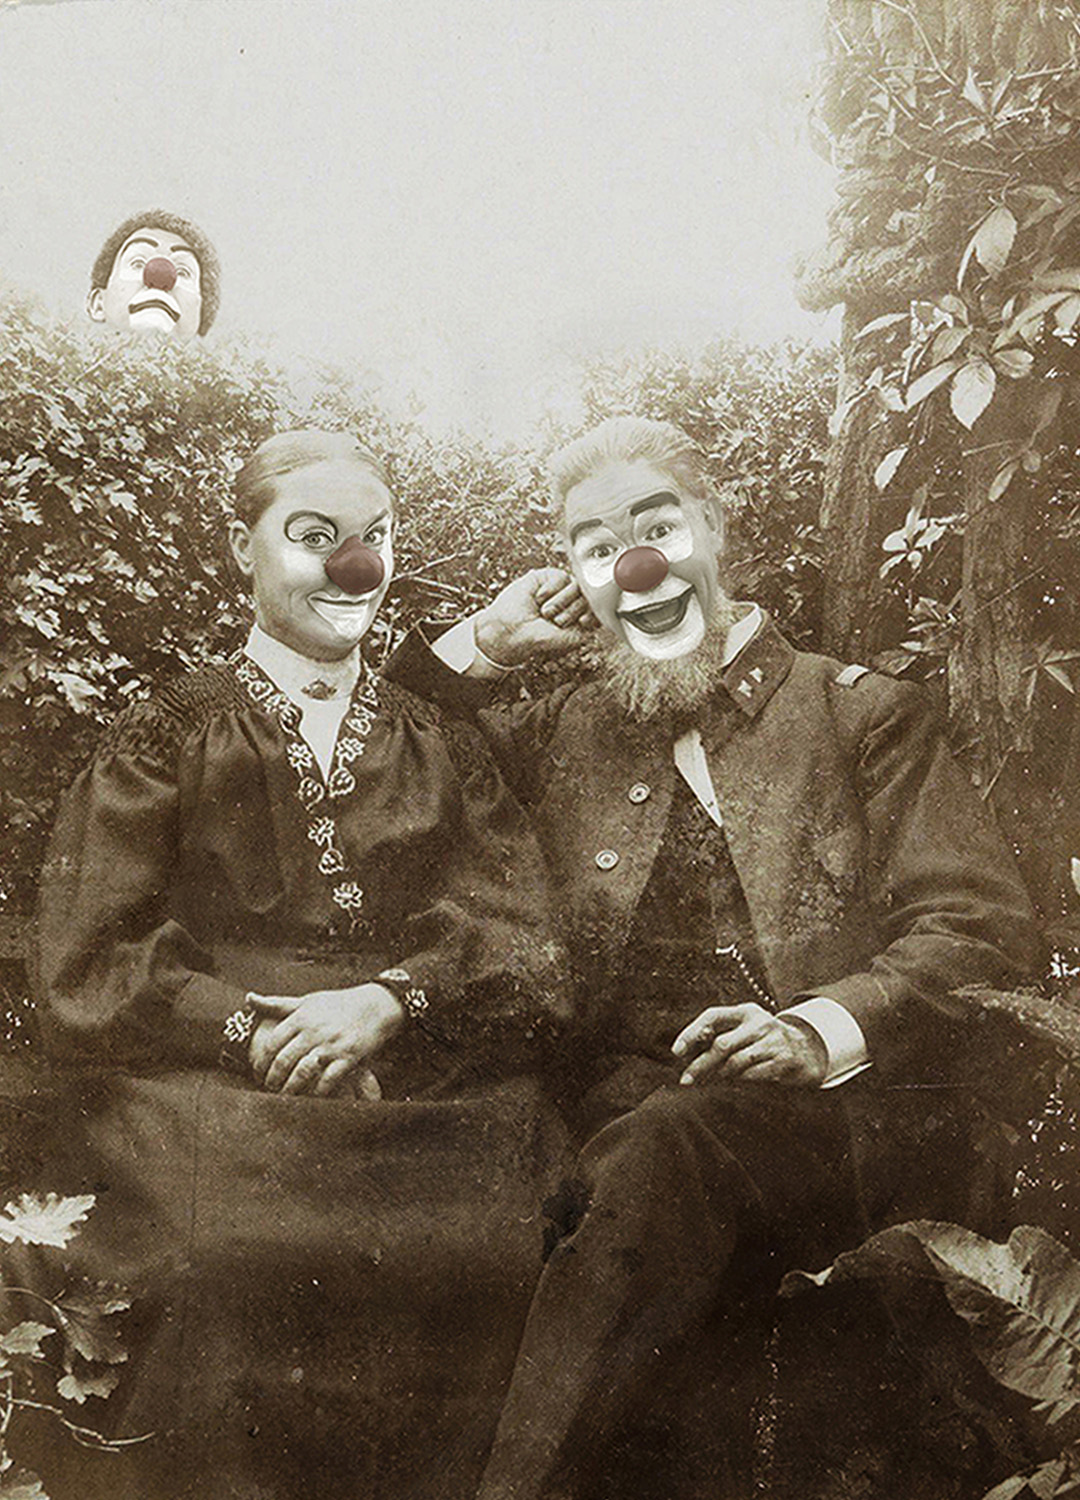 En bild i gammaldags stil, sepiafärgad. Två clowner på en bänk i förgrunden, en tredje clown sticker upp huvudet bakom en buske i bakgrunden.